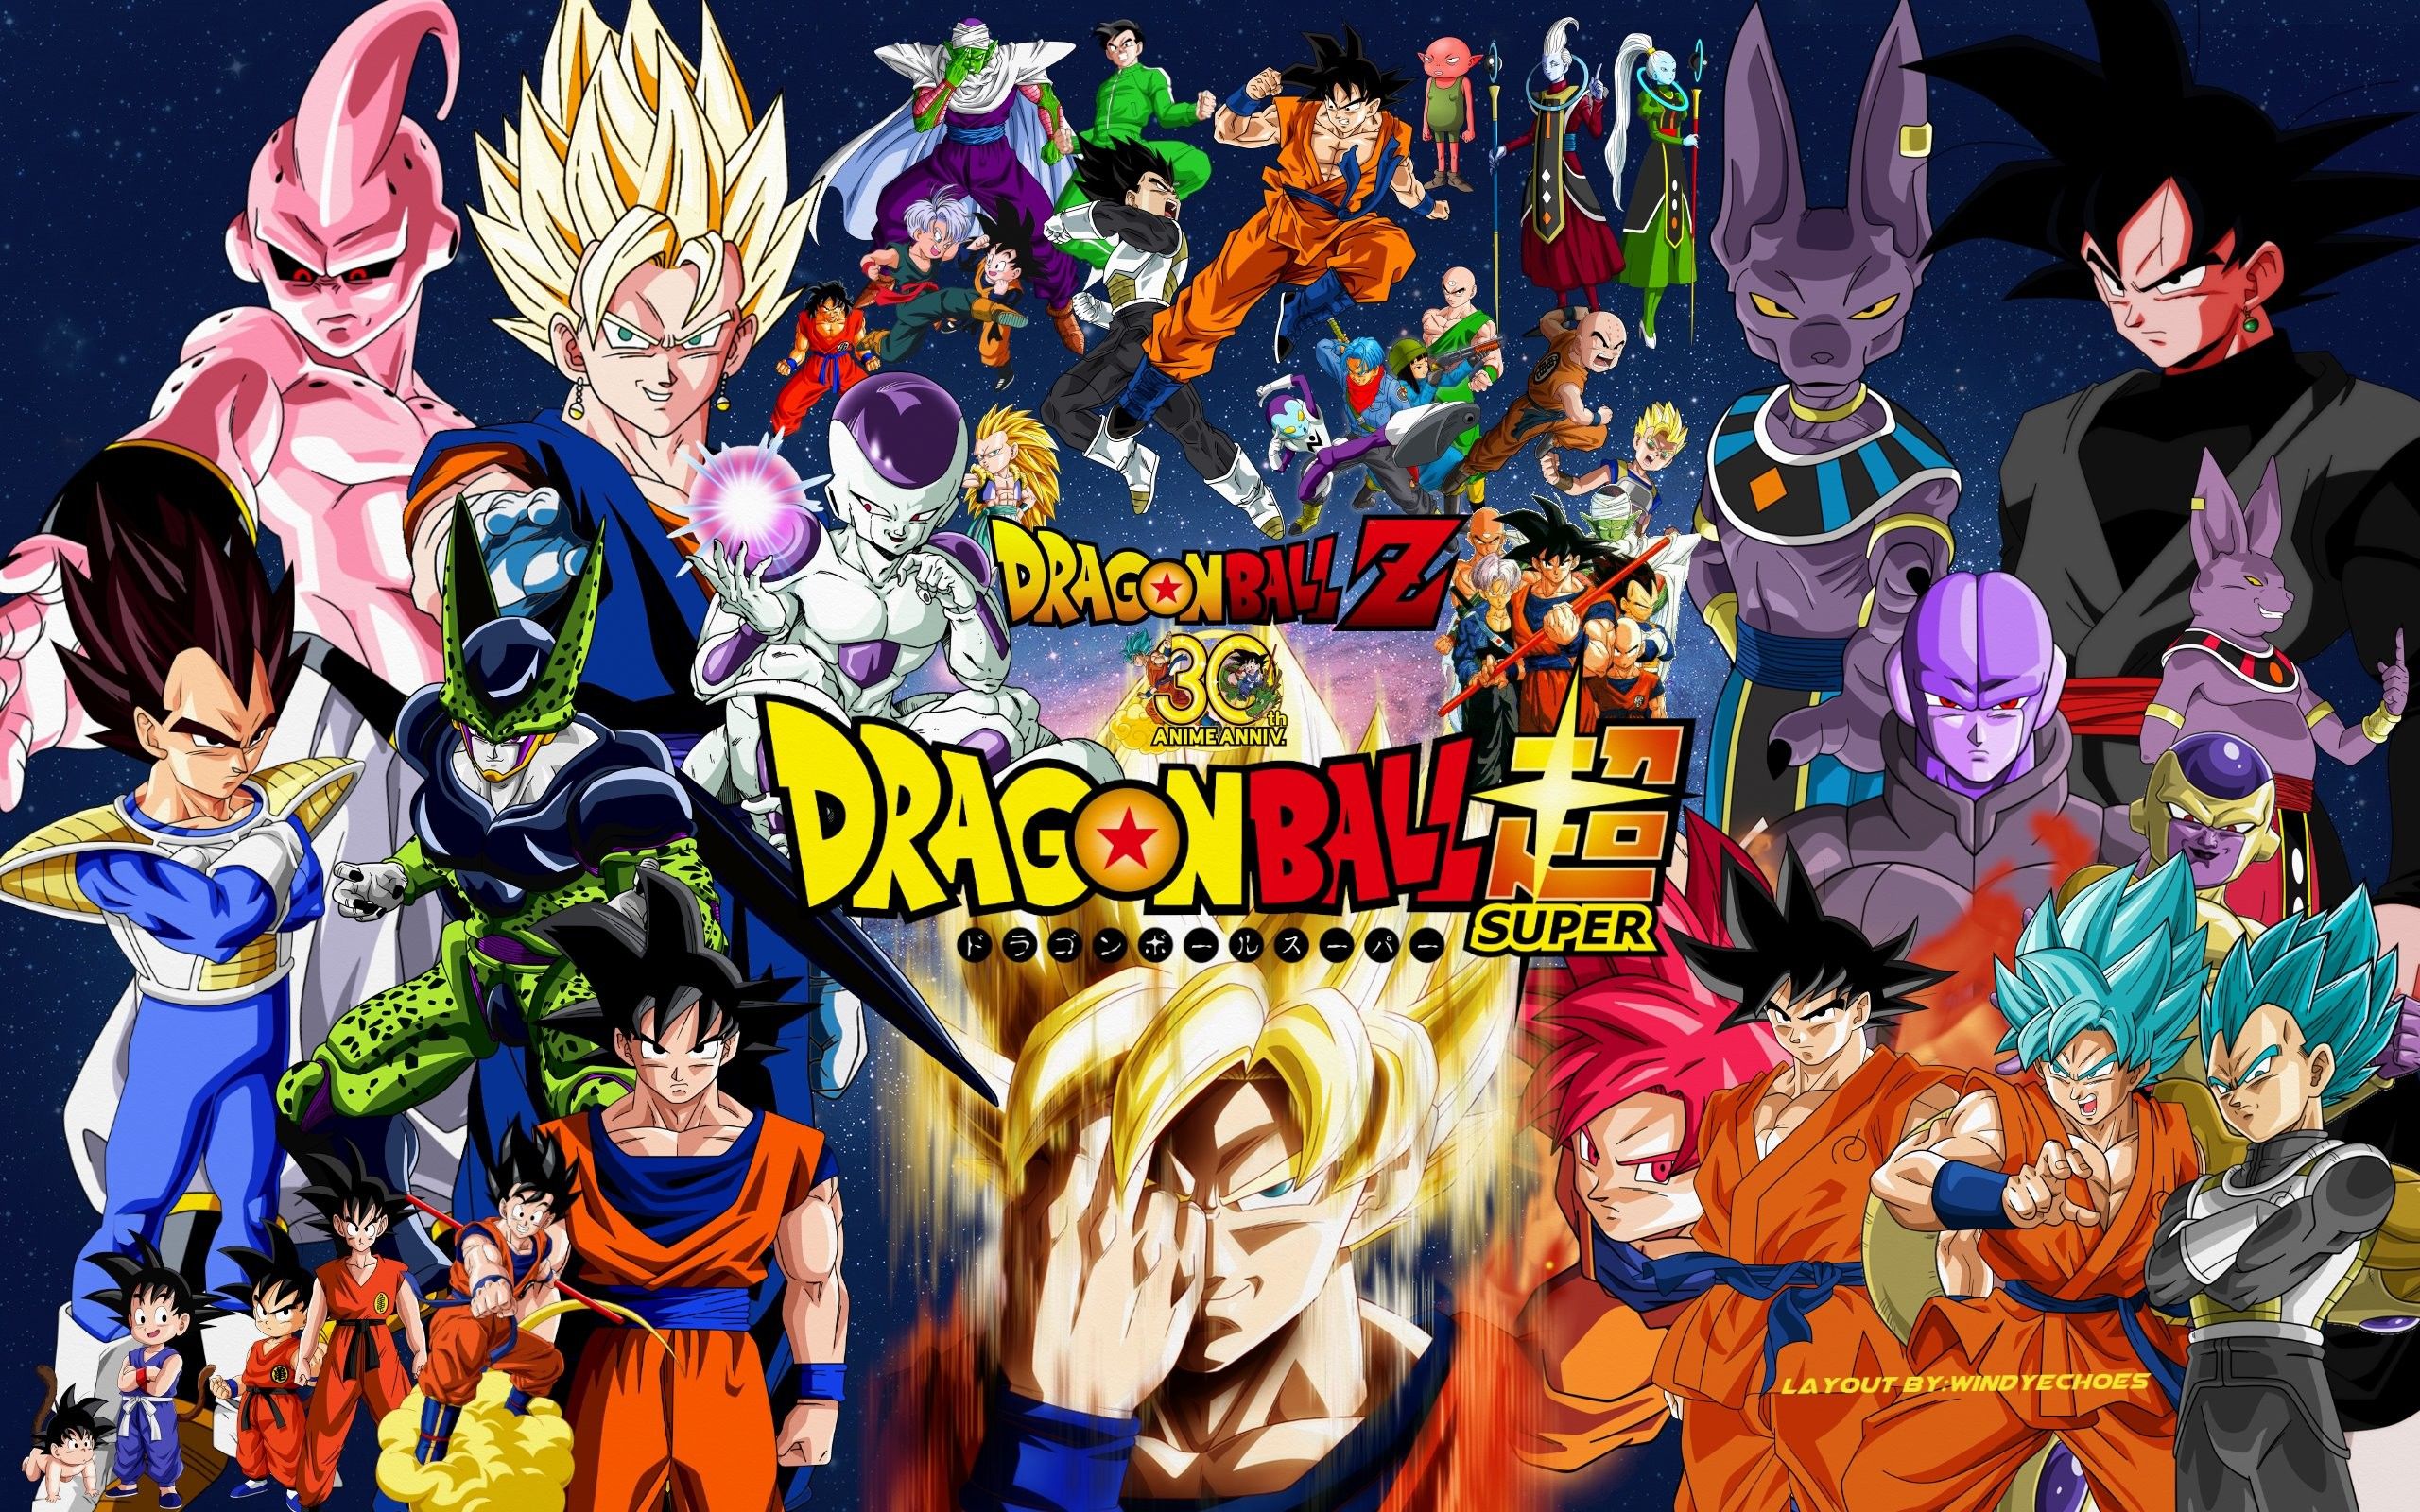 Tournament of Power  Dragon ball super, Dragon ball super wallpapers,  Anime dragon ball